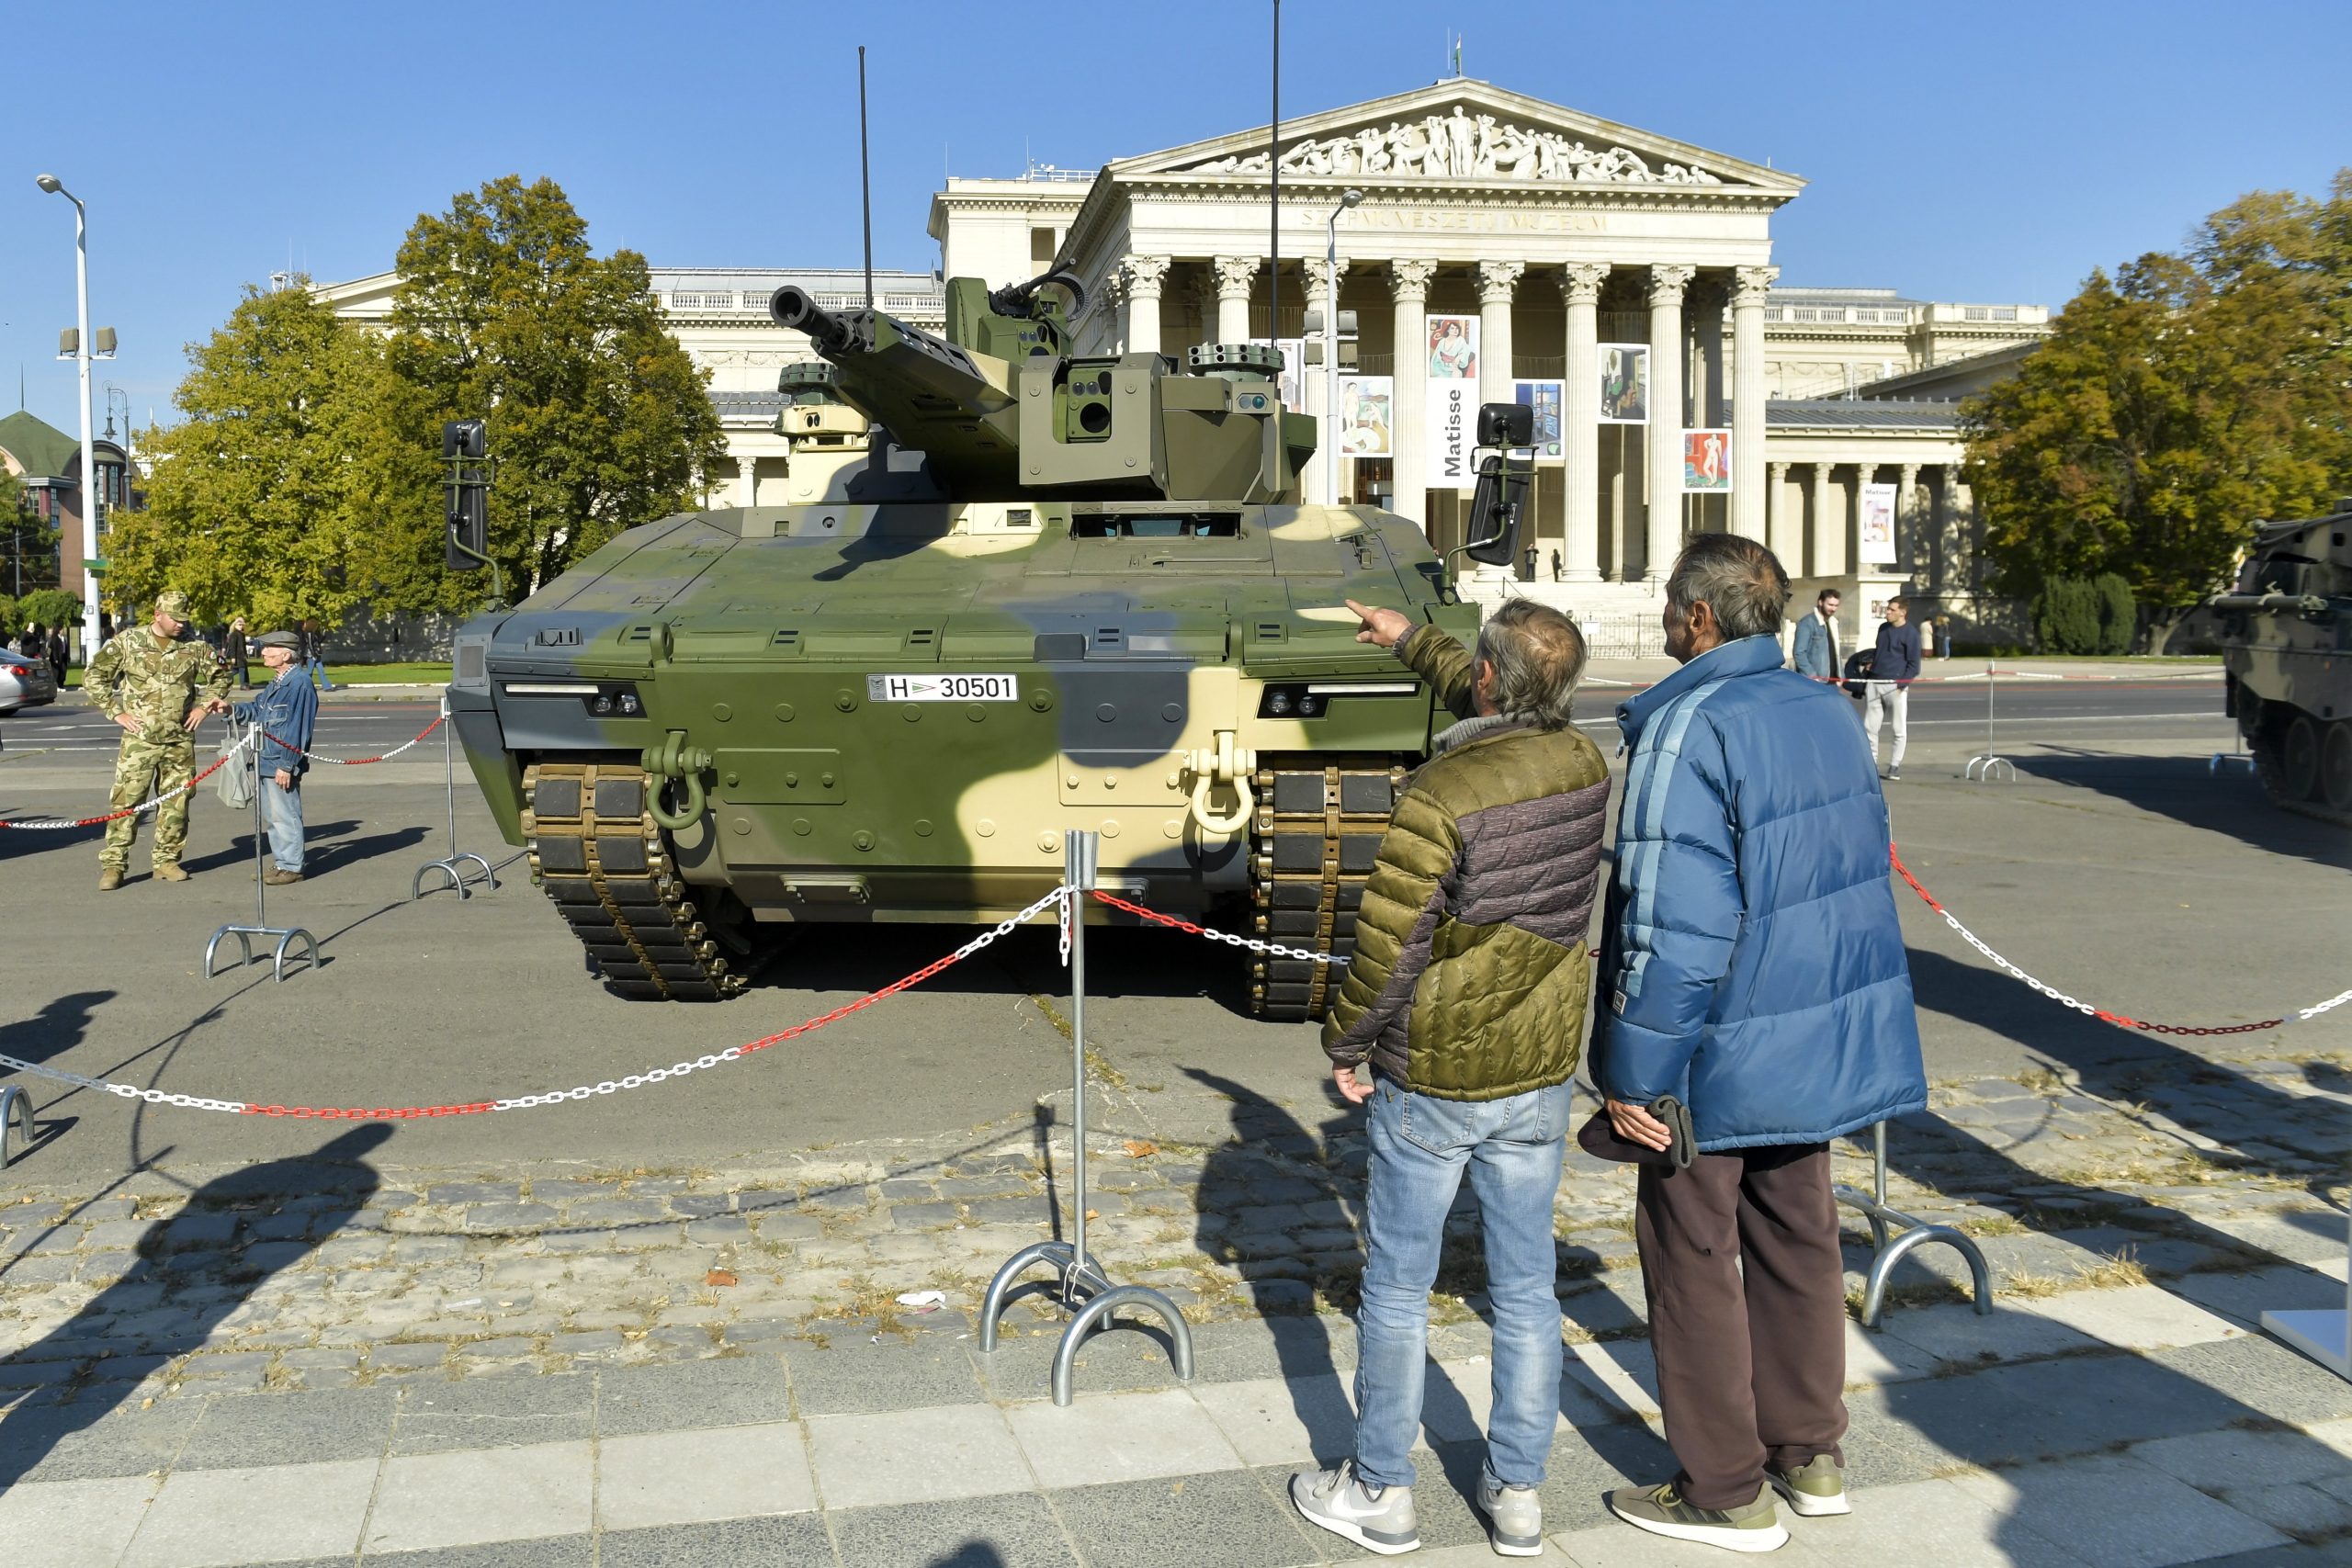 Eine weitere Großkatze erhält Einzug in das Arsenal der ungarischen Landstreitkräfte